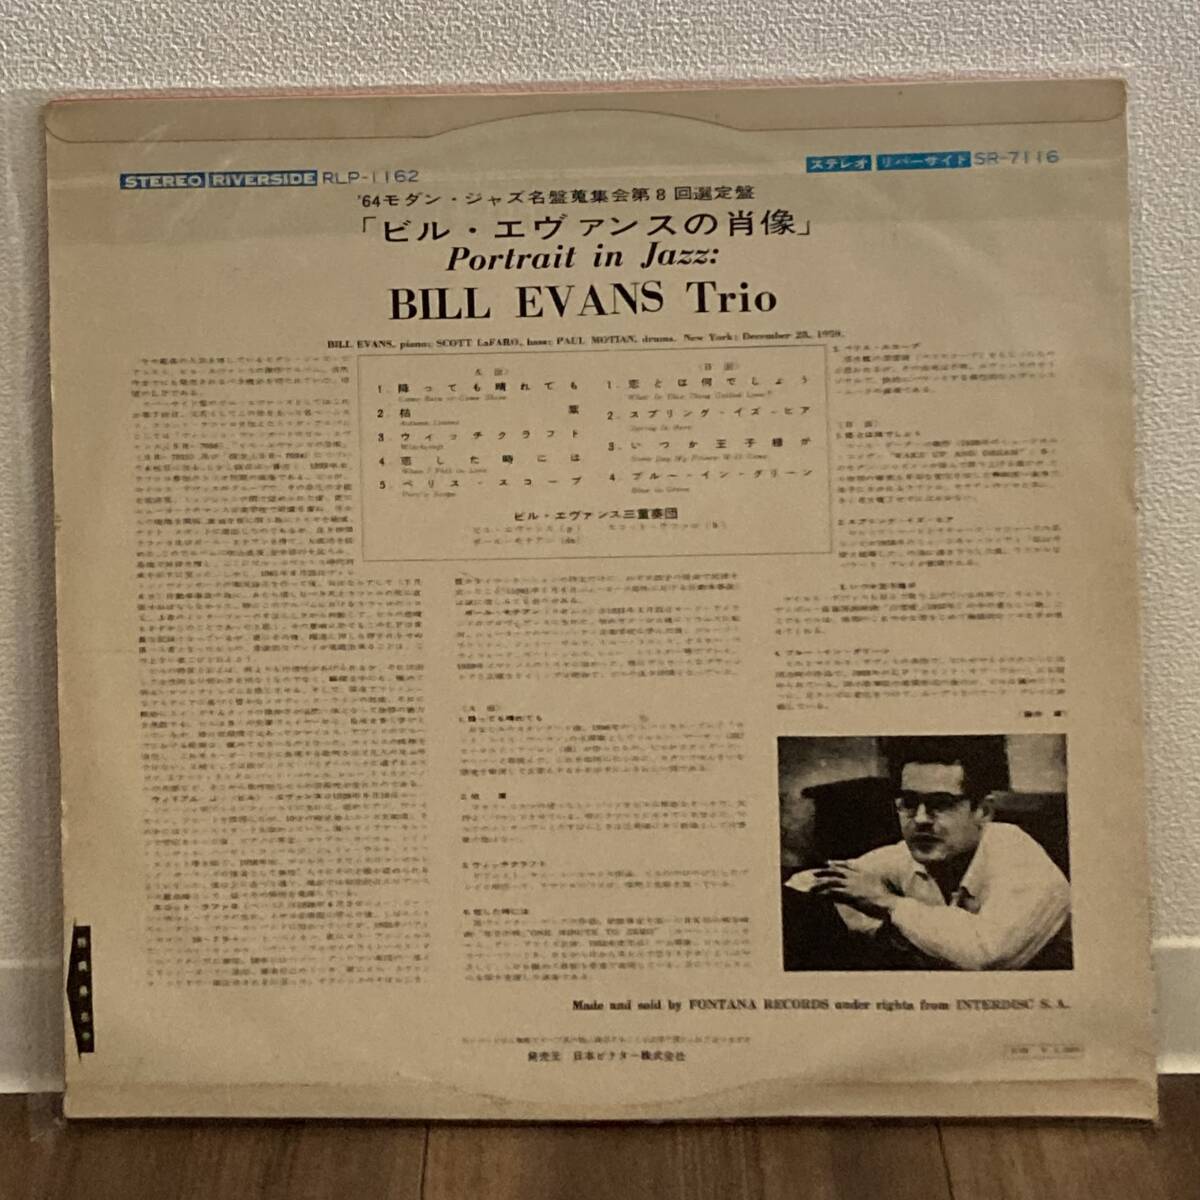 希少 ペラジャケ 日本オリジナル盤 Bill Evans trio Portrait in jazz 深溝 SR 7116 ビル エヴァンスの肖像_画像2